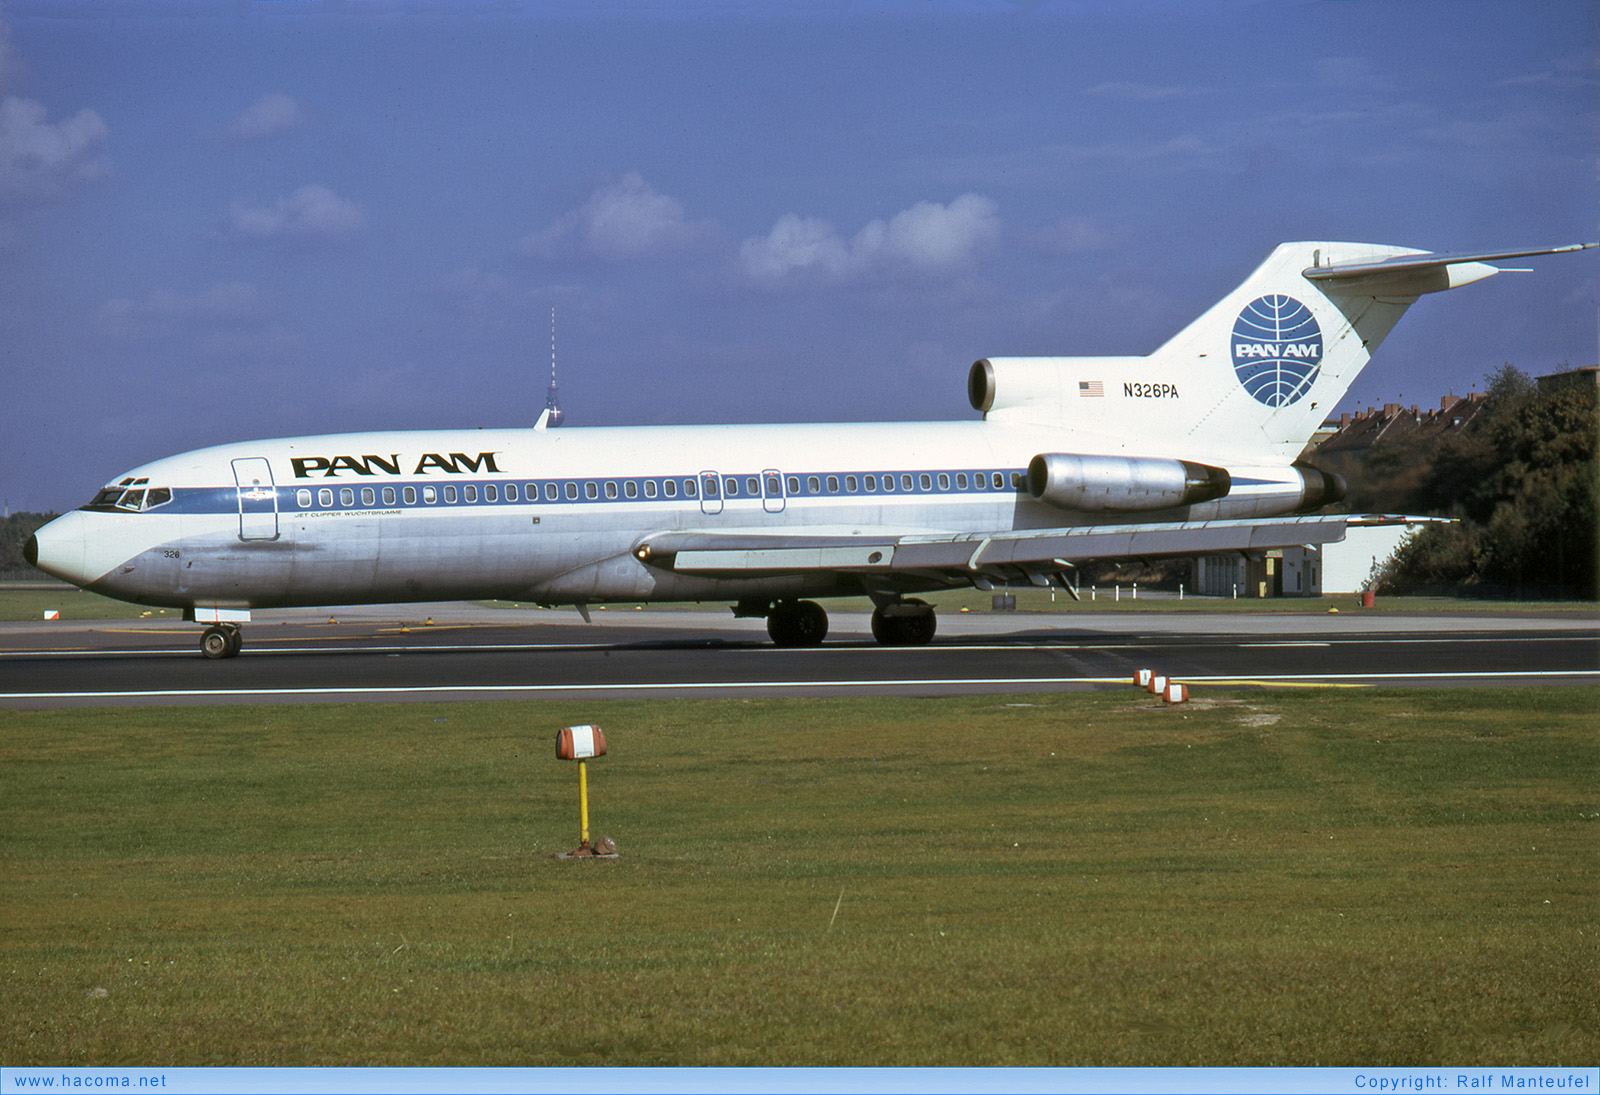 Foto von N326PA - Pan Am Clipper Muenchen / DeSoto / Nuremberg / White Falcon / Raven / Berolina / Wuchtbrumme - Flughafen Tempelhof - 07.1974